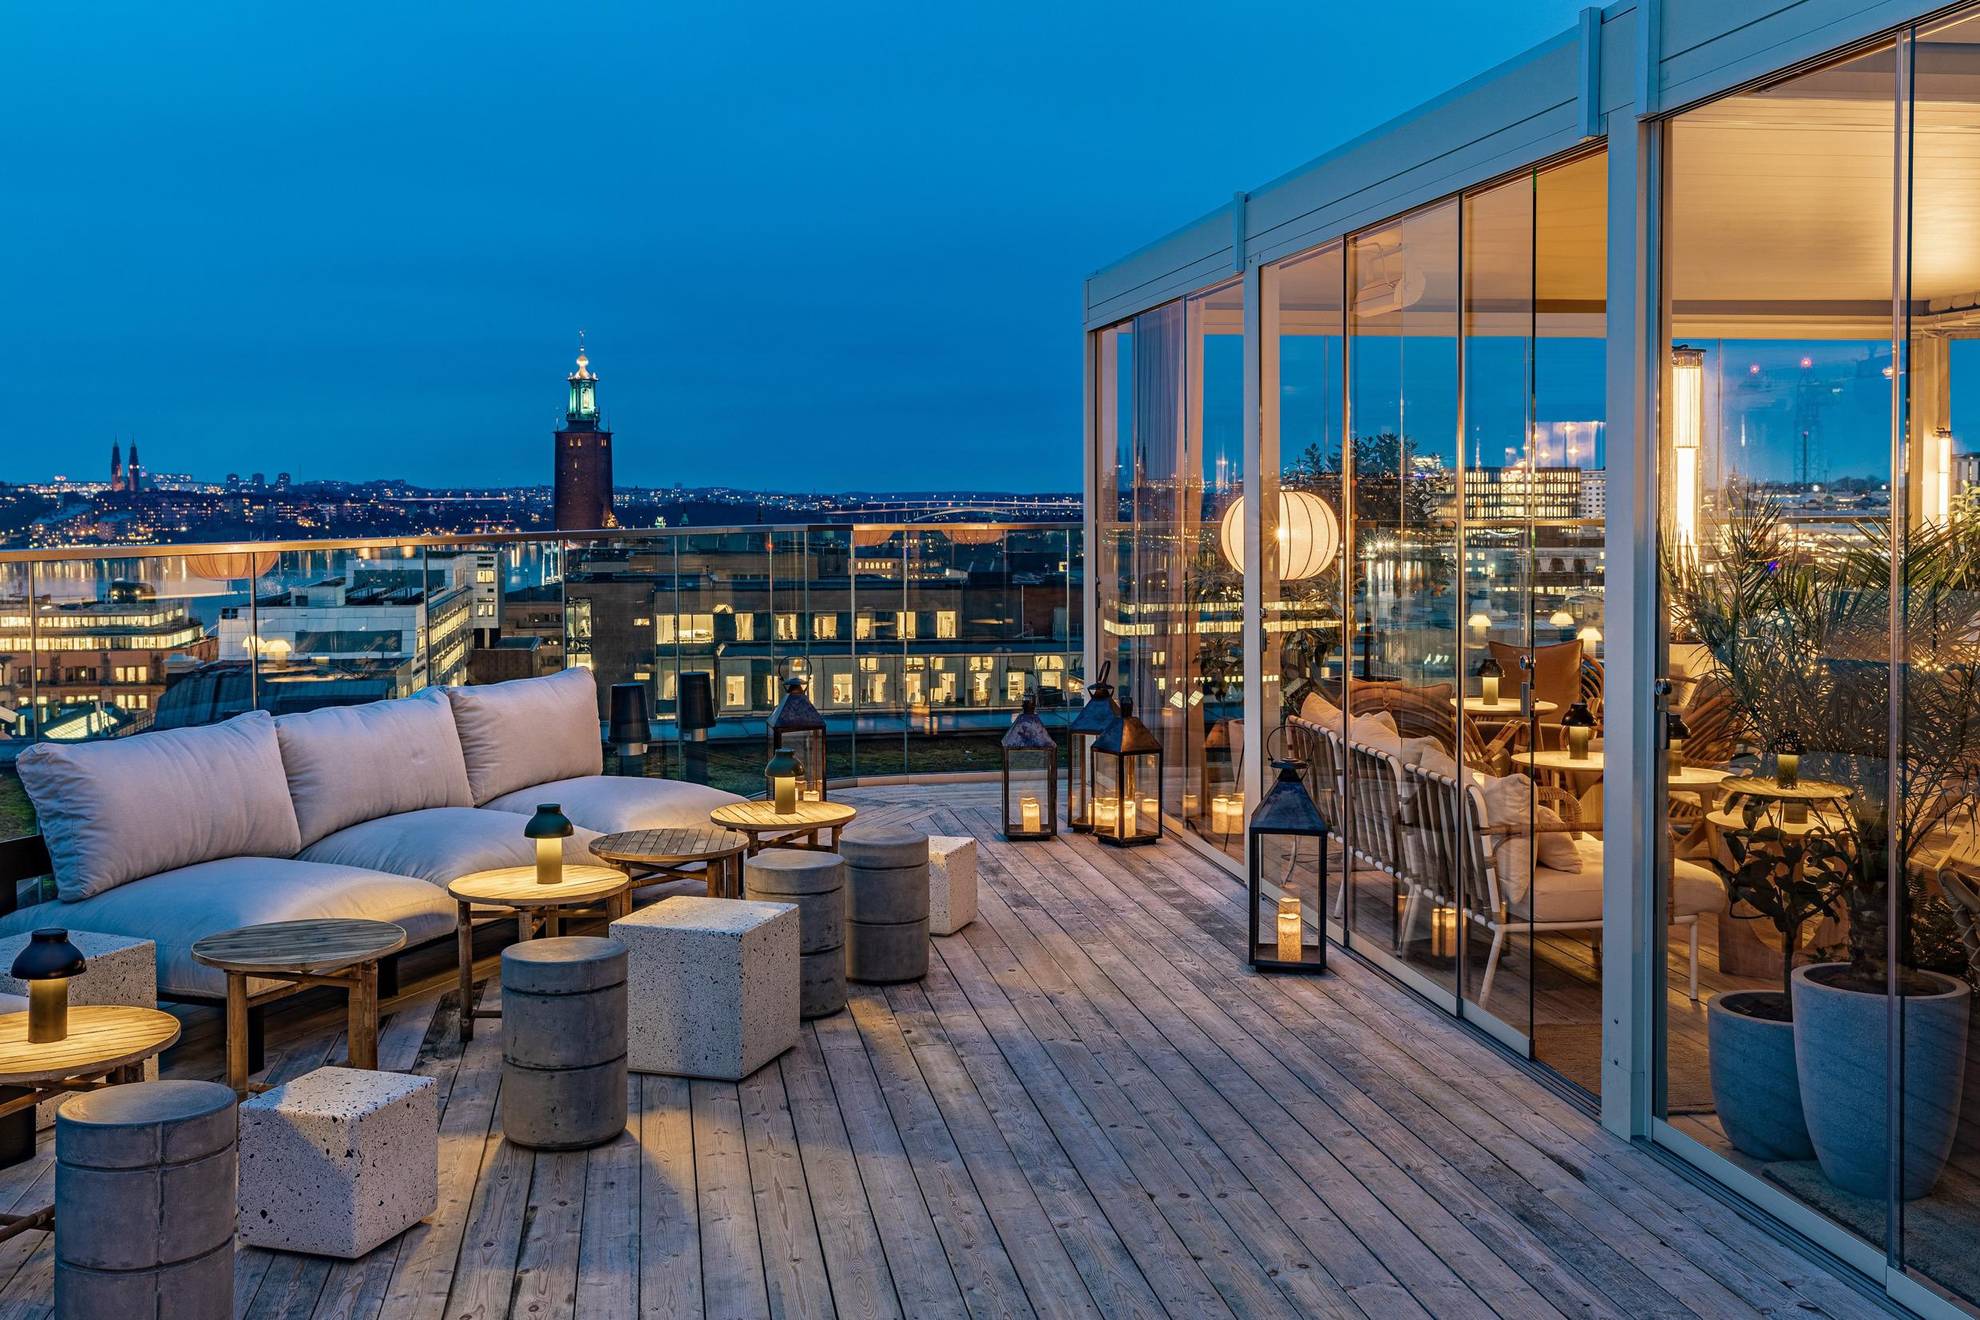 Een stijlvolle buitenbar op een dak met uitzicht over Stockholm en het stadhuis. Rechts zie je een gedeelte dat achter glazen wand zit.